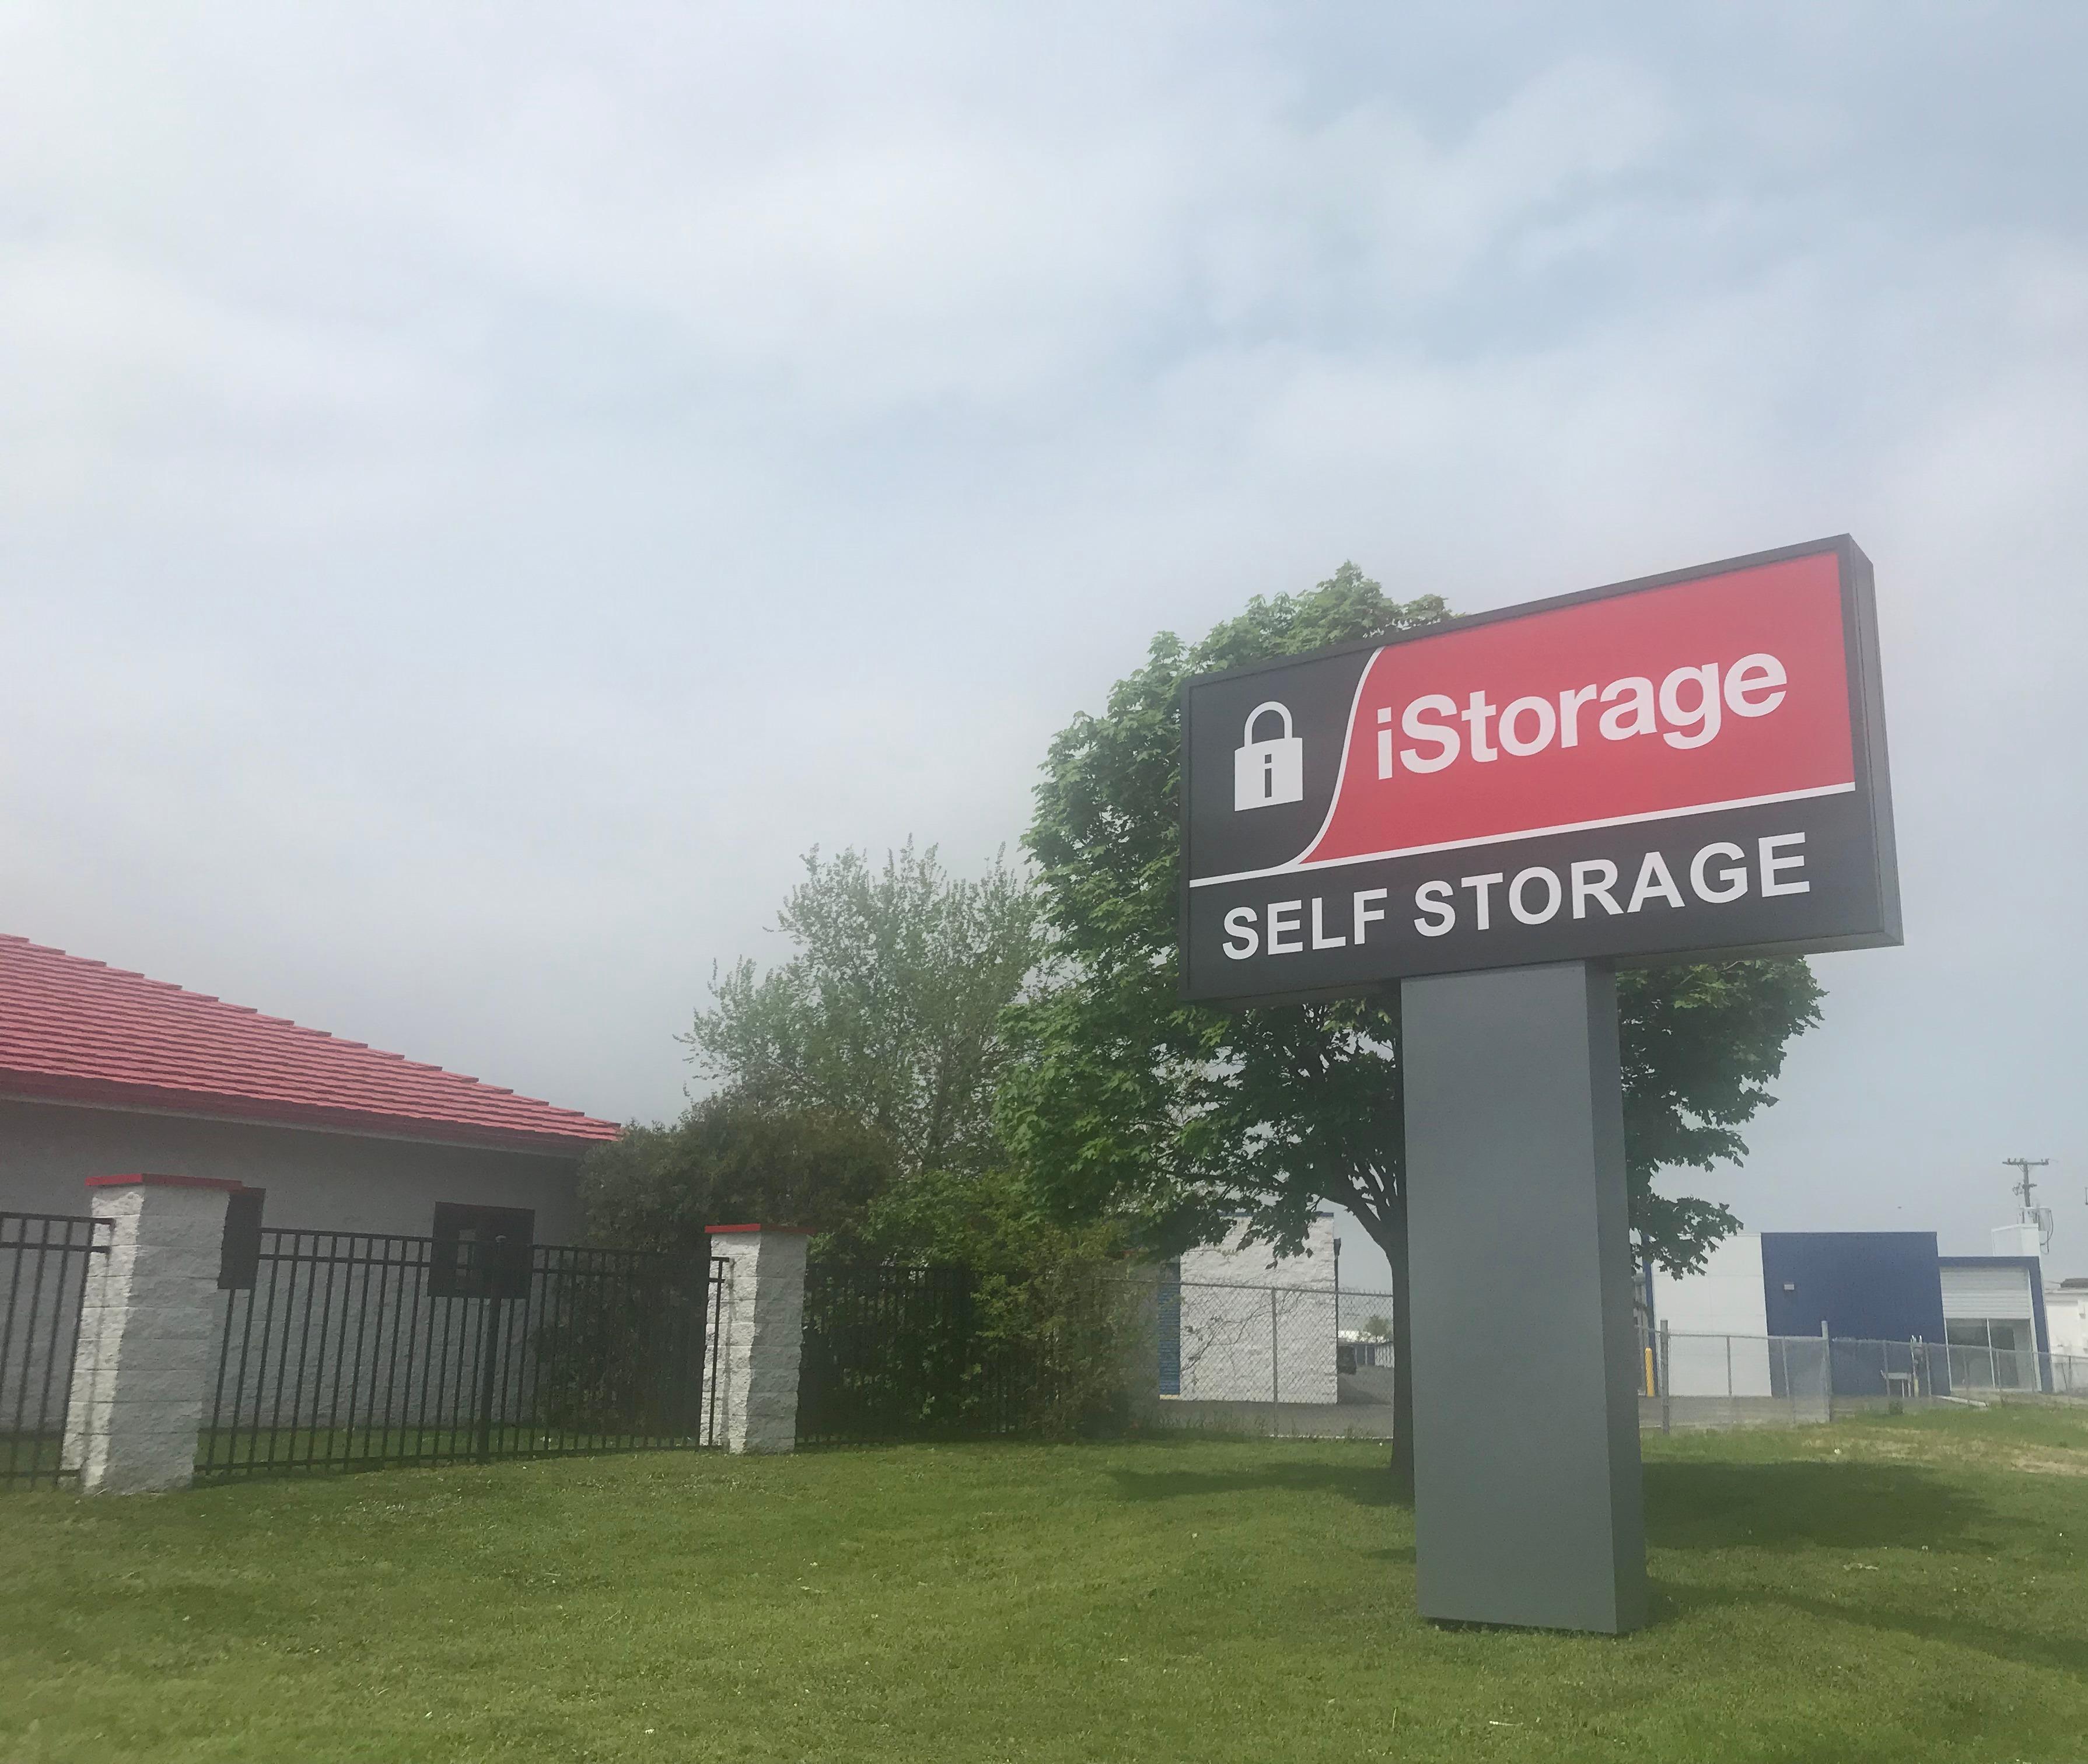 iStorage Self Storage at 20979 Groesbeck Hwy in Warren, MI